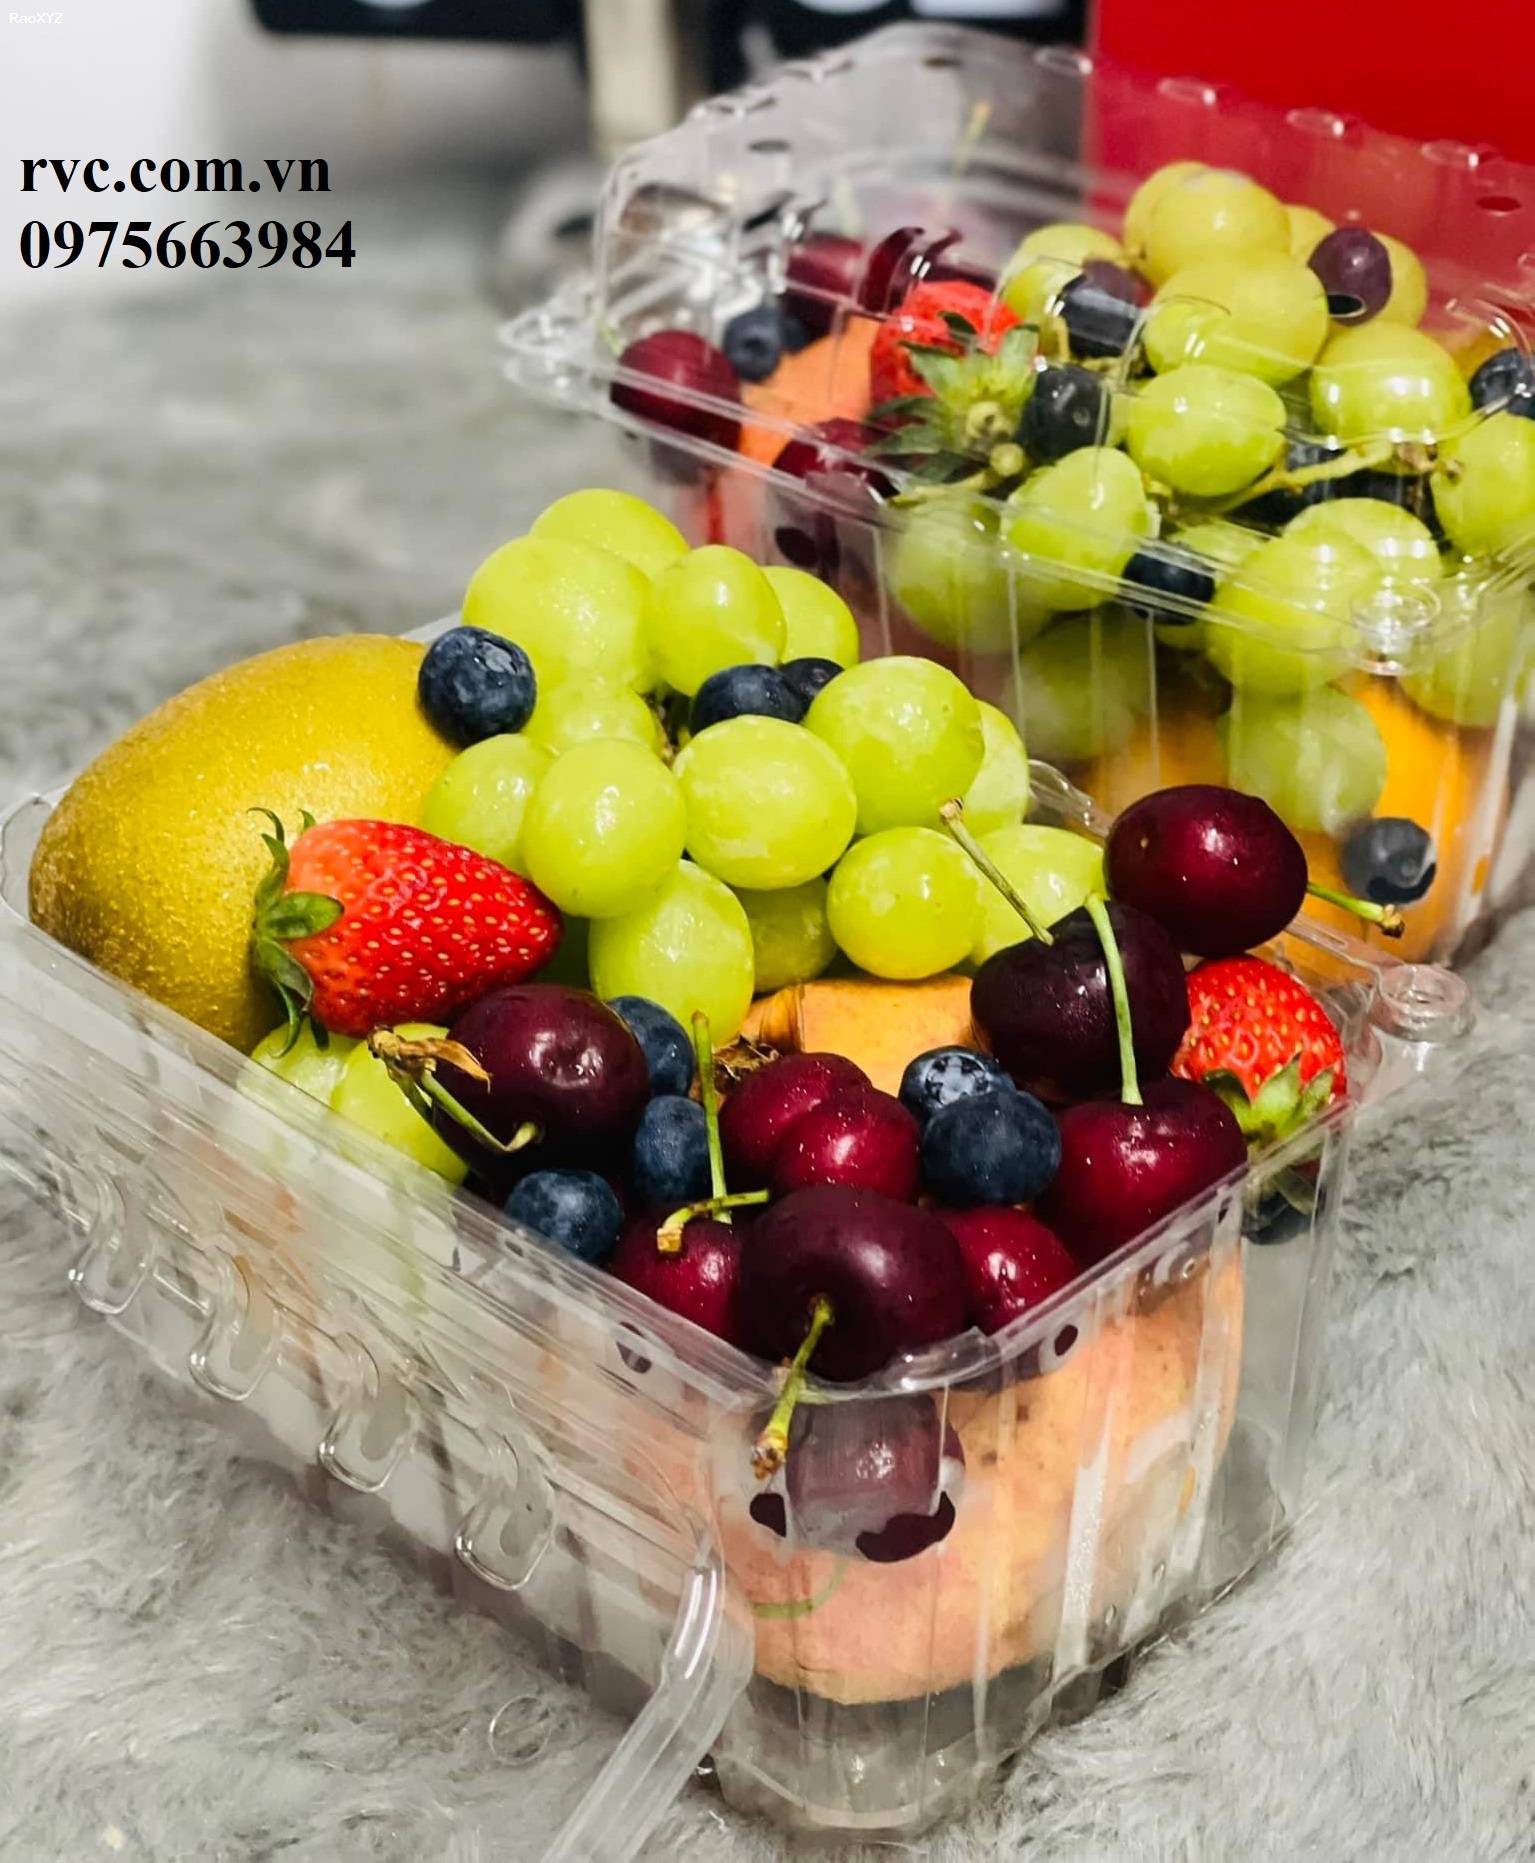 Câp nhật mẫu hộp nhựa trái cây 1kg P1000B giá tốt bạn nên biết